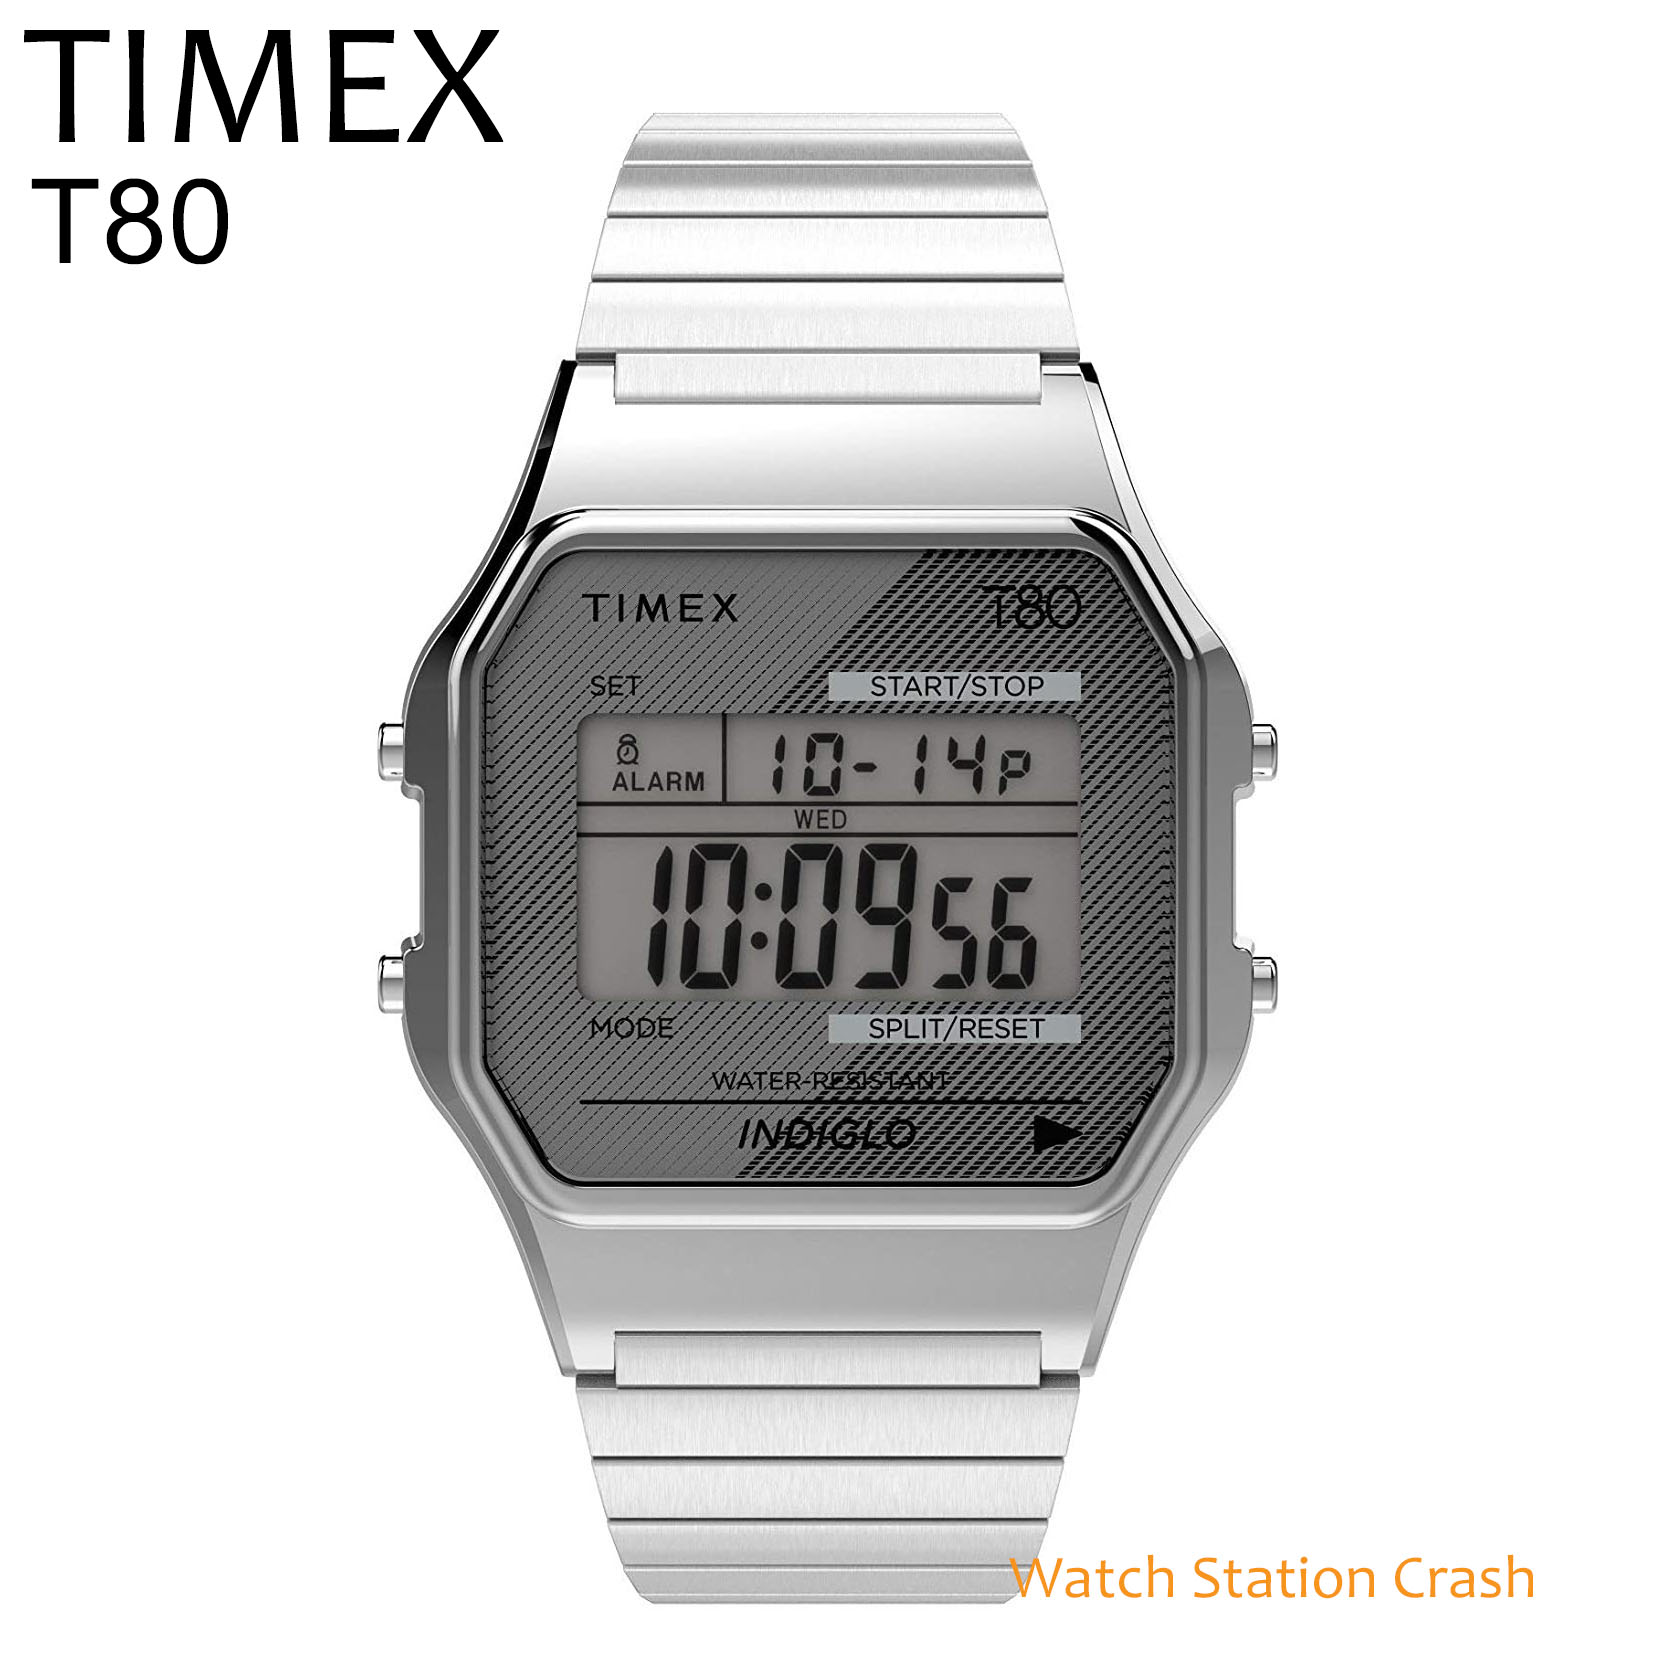 楽天市場 New Timex 腕時計 デジタル メンズ レディース シルバー Tw2r 80年代のゲームから着想したデジタルウォッチ クラシック アメリカン プレゼント ギフト ウォッチ かっこいい おしゃれ 贈り物 プレゼント 誕生日 Watch Station Crash